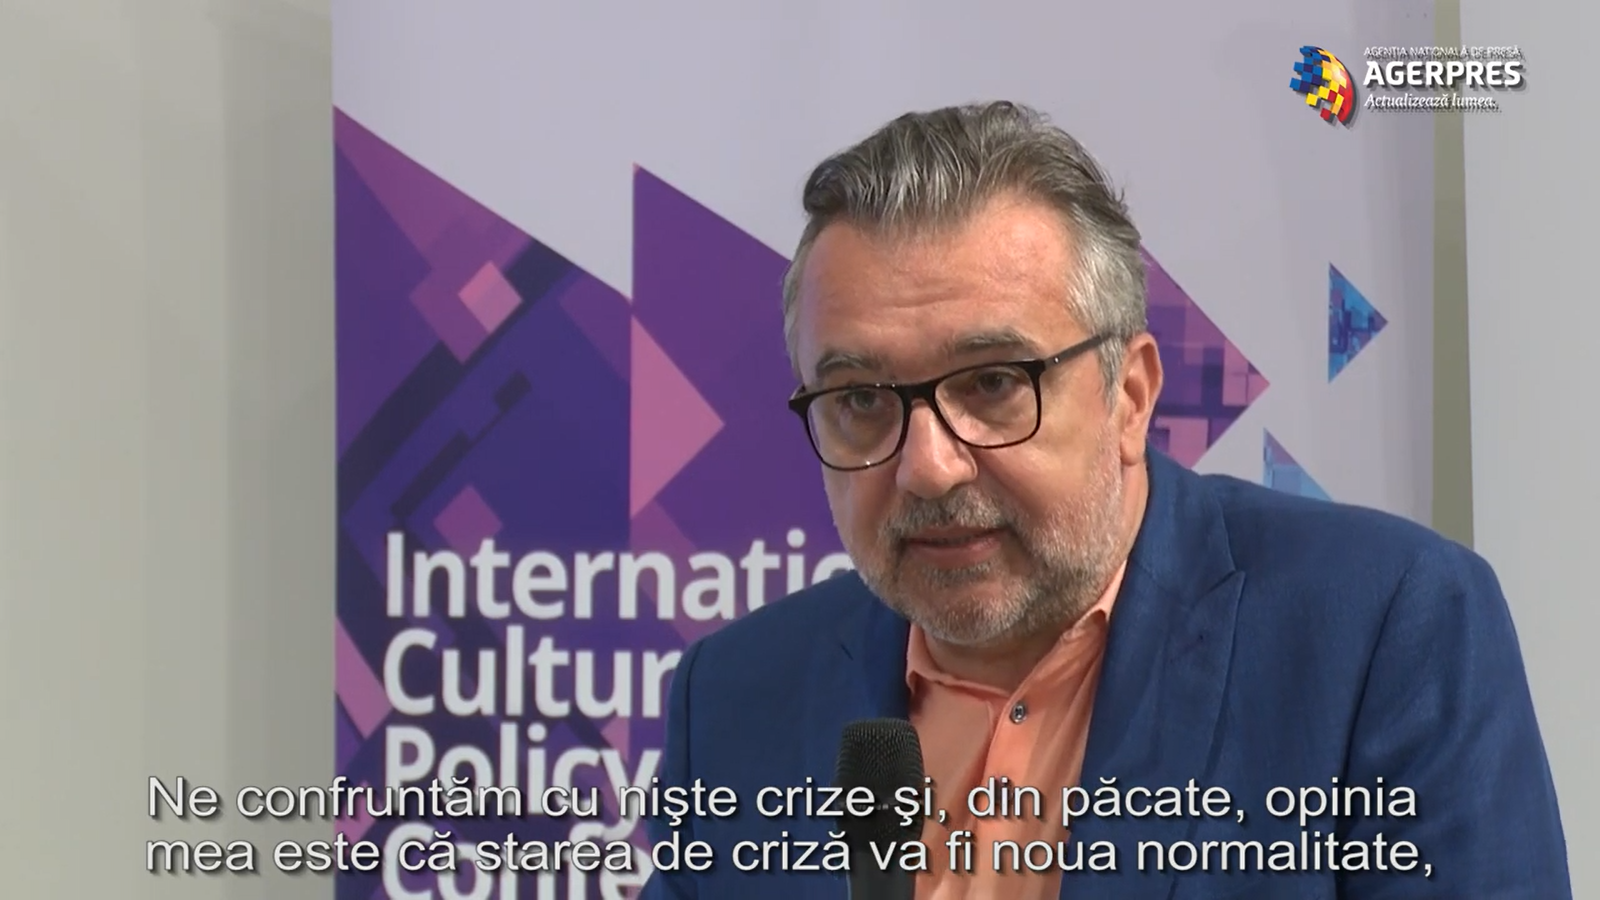 Ministrul Culturii, Lucian Romașcanu: Opinia mea este că starea de criză va fi noua normalitate. VIDEO AGERPRES